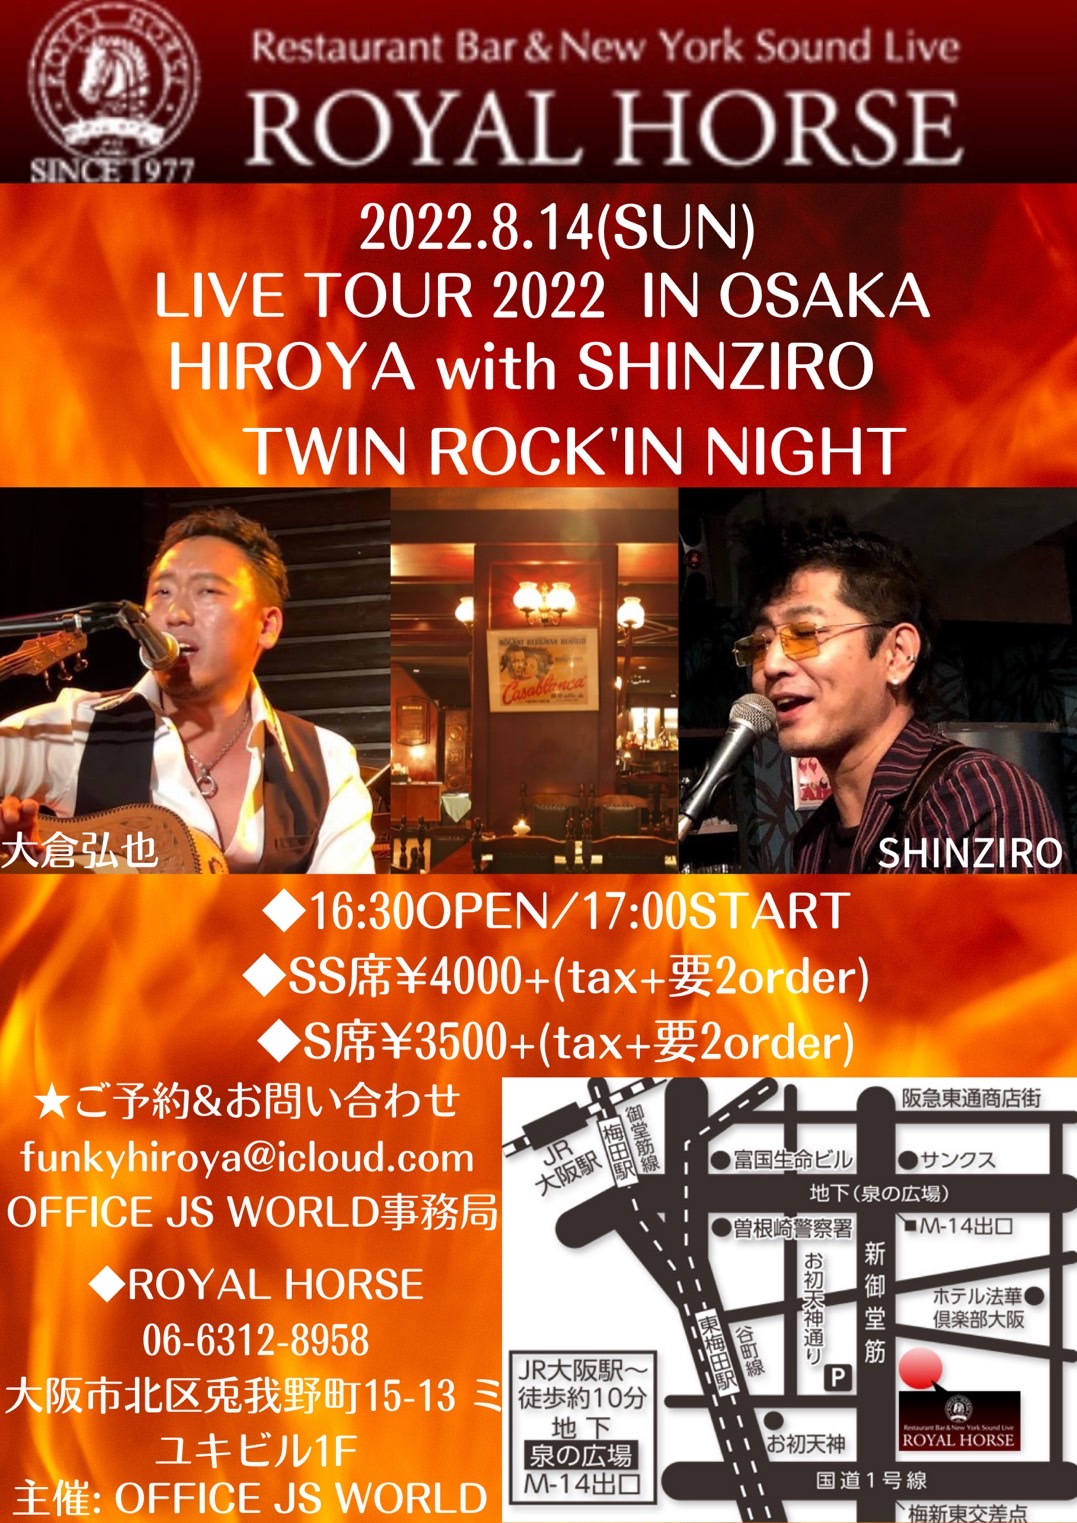 8／14（日）LIVE TOUR 2022 大阪ロイヤルホース-TWIN ROCK'IN NIGHT-HIROYA with SHINZIRO